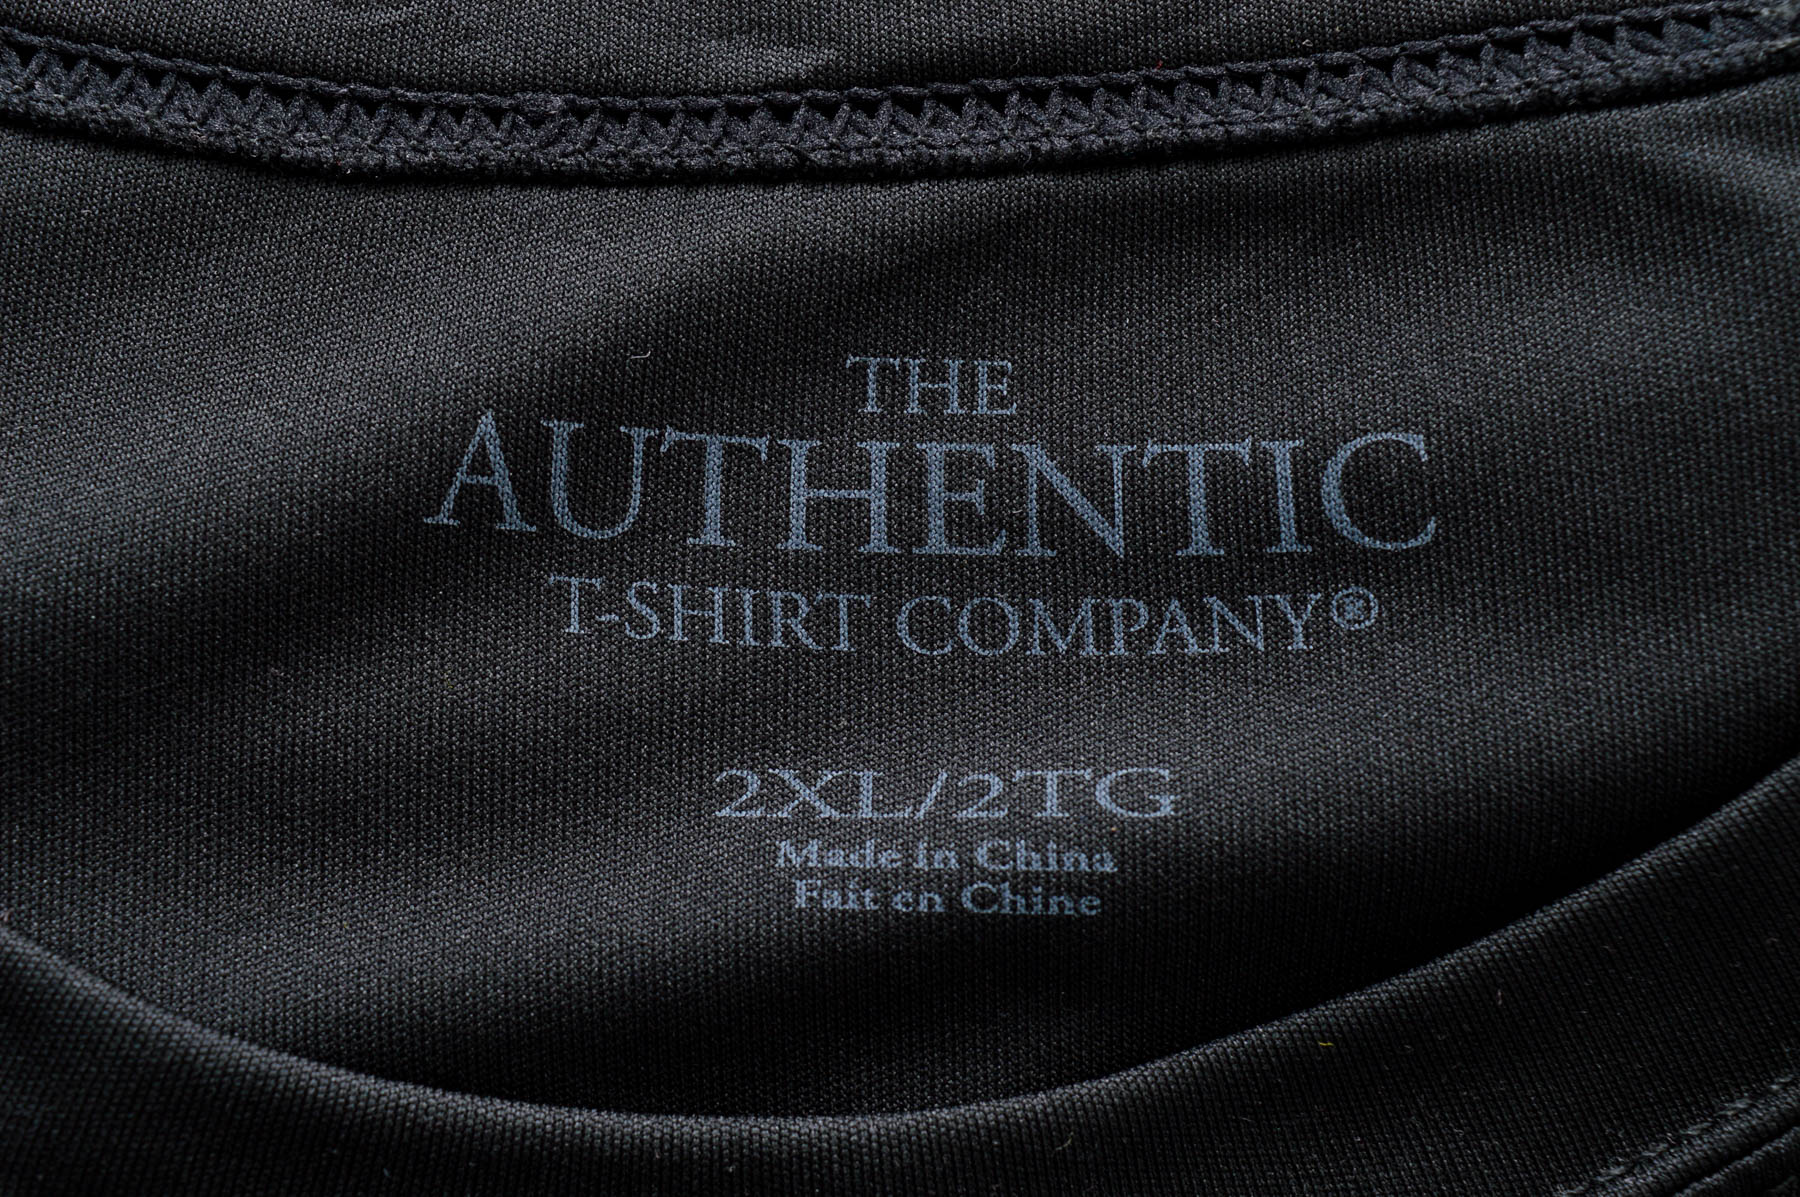 Мъжка тениска - ATC THE AUTHENTIC T-SHIRT COMPANY - 2